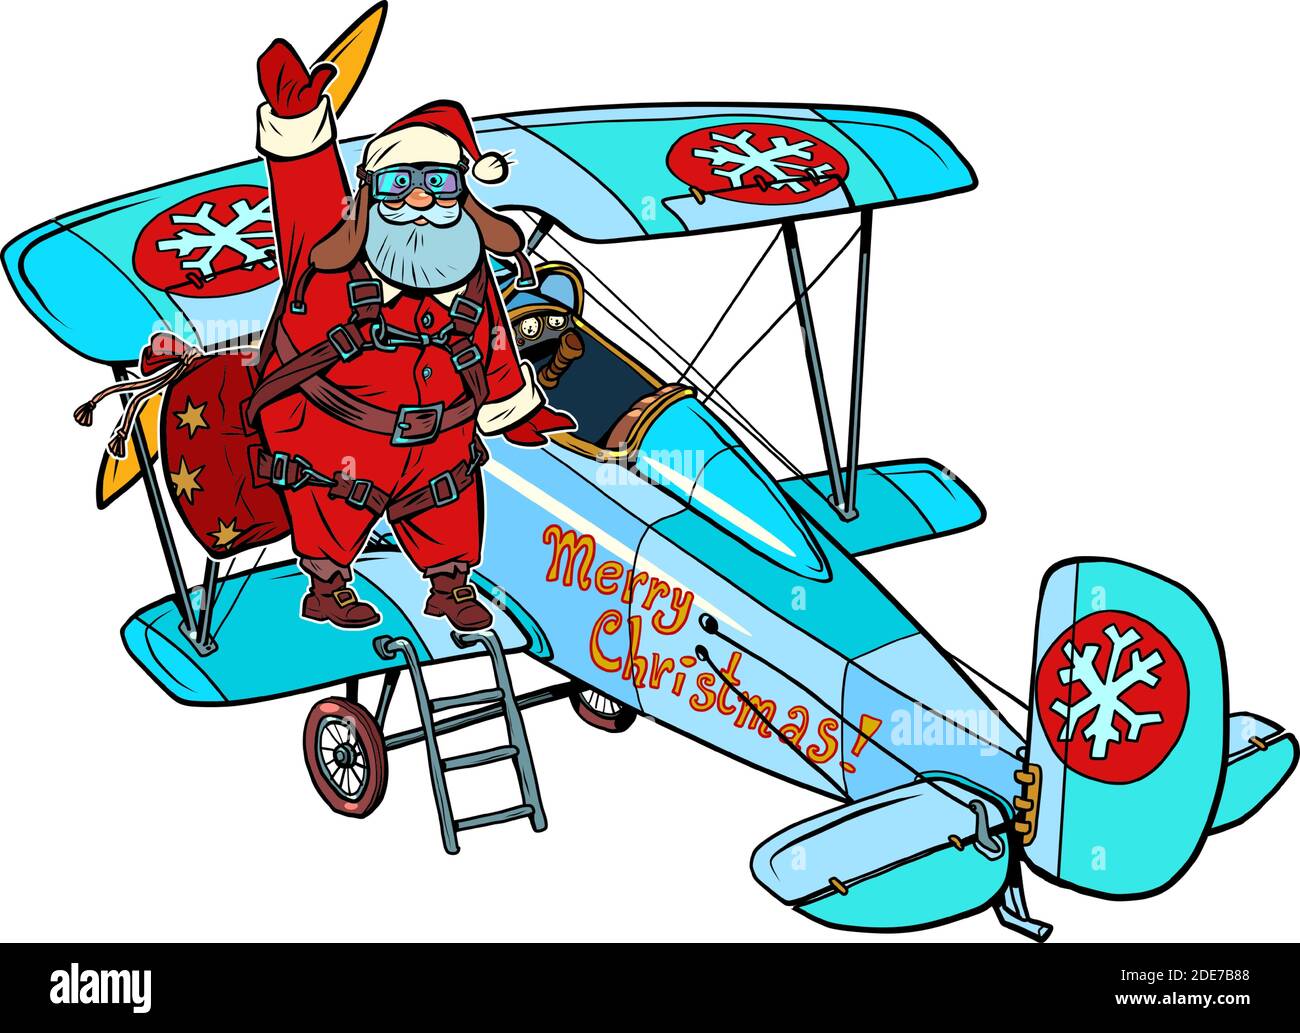 Der Weihnachtsmann steigt in ein Retro-Flugzeug. Weihnachtsgeschichte. Weißer isolierter Hintergrund Stock Vektor